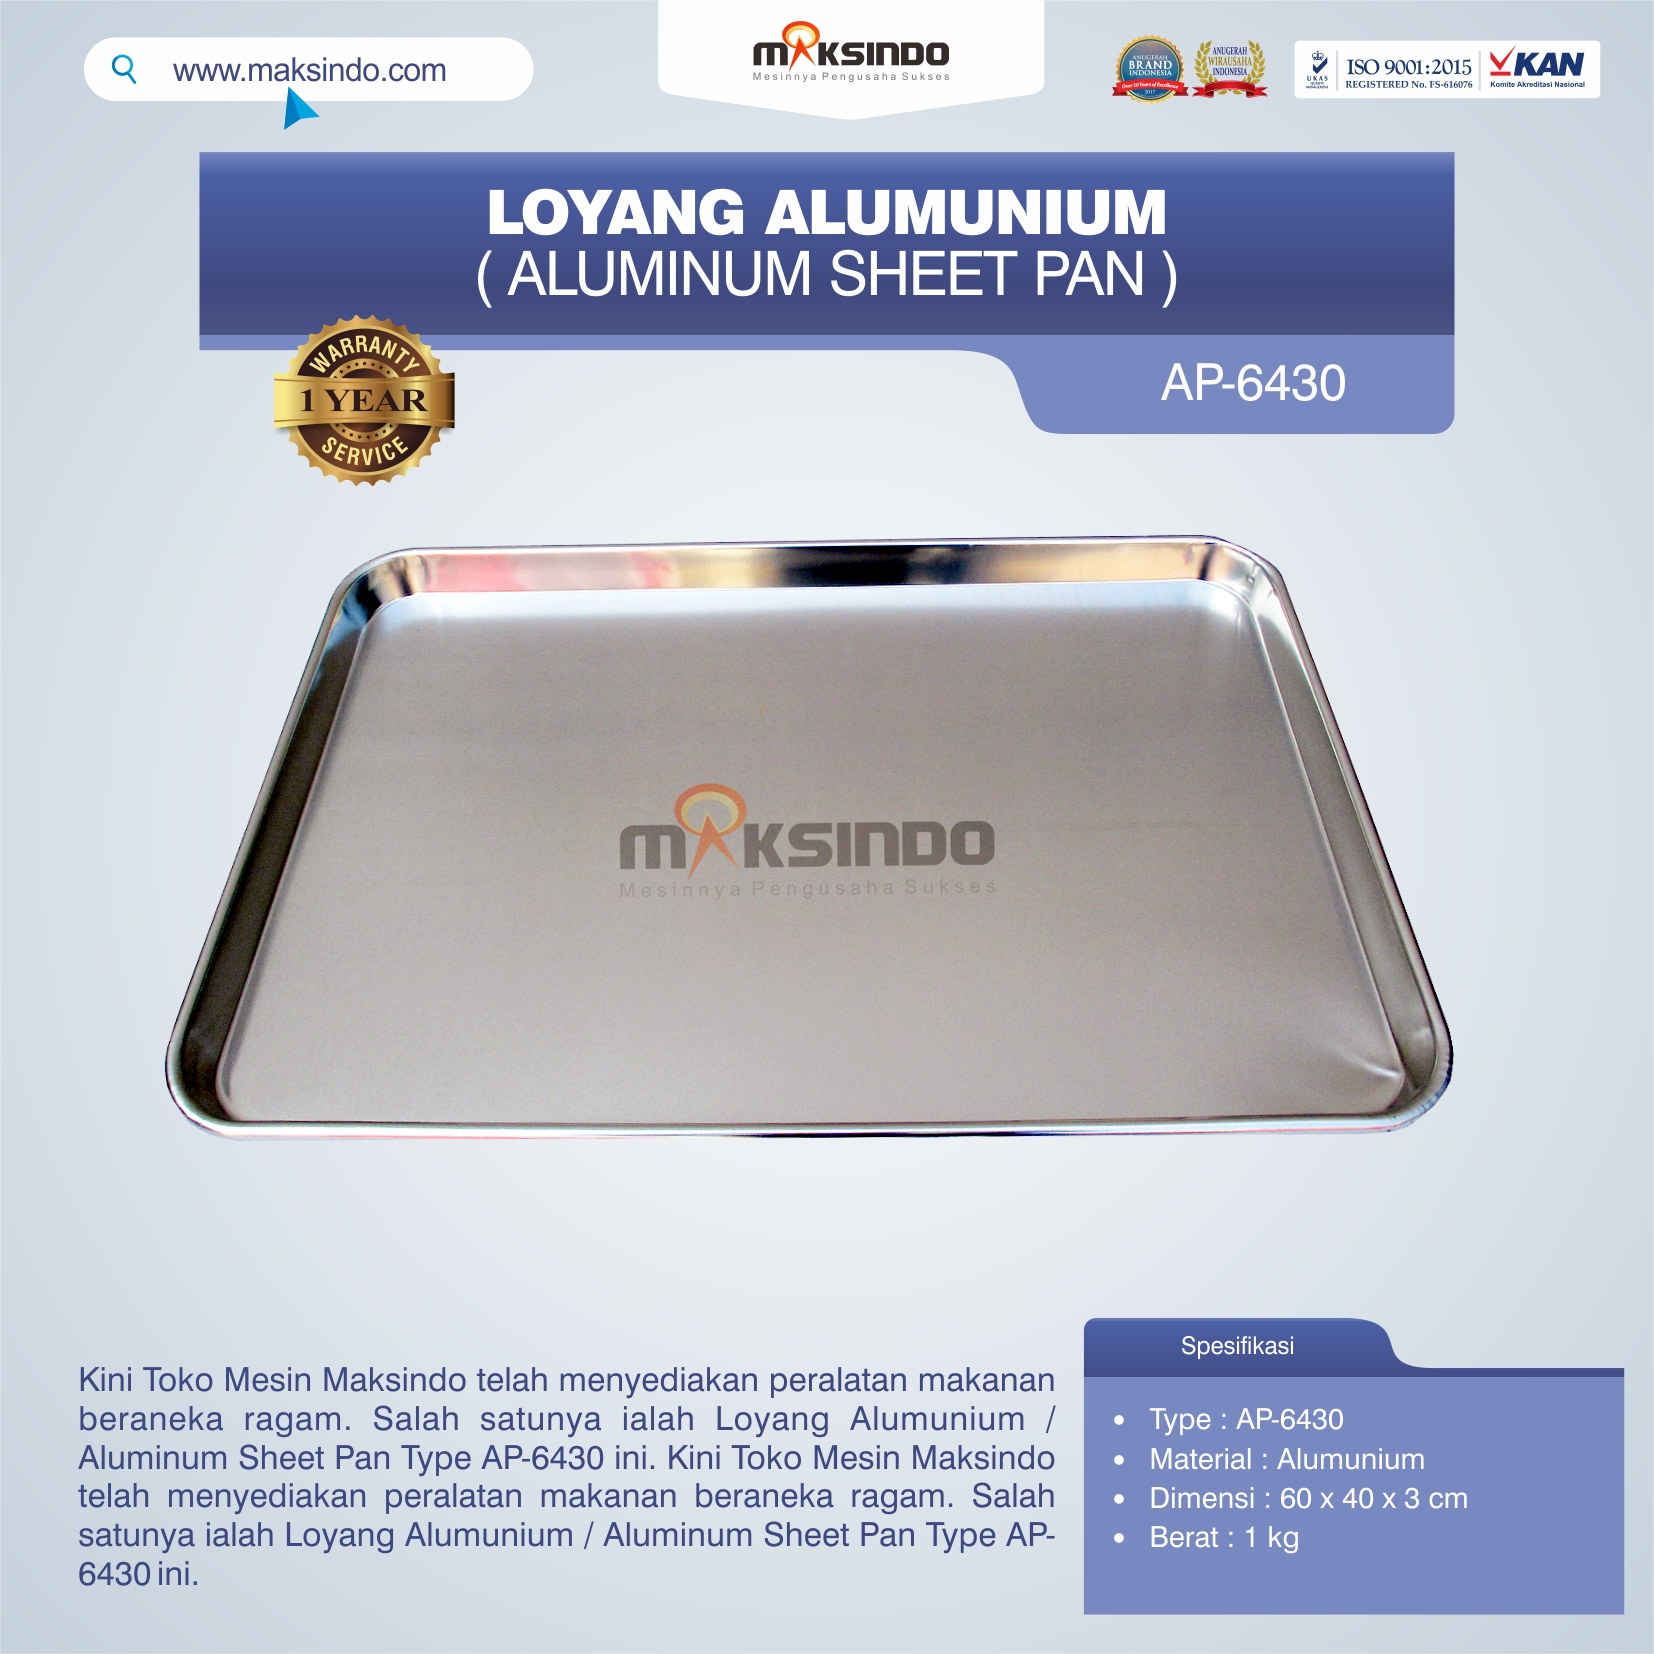 Jual Loyang Alumunium / Aluminum Sheet Pan Type AP-6430 di Yogyakarta